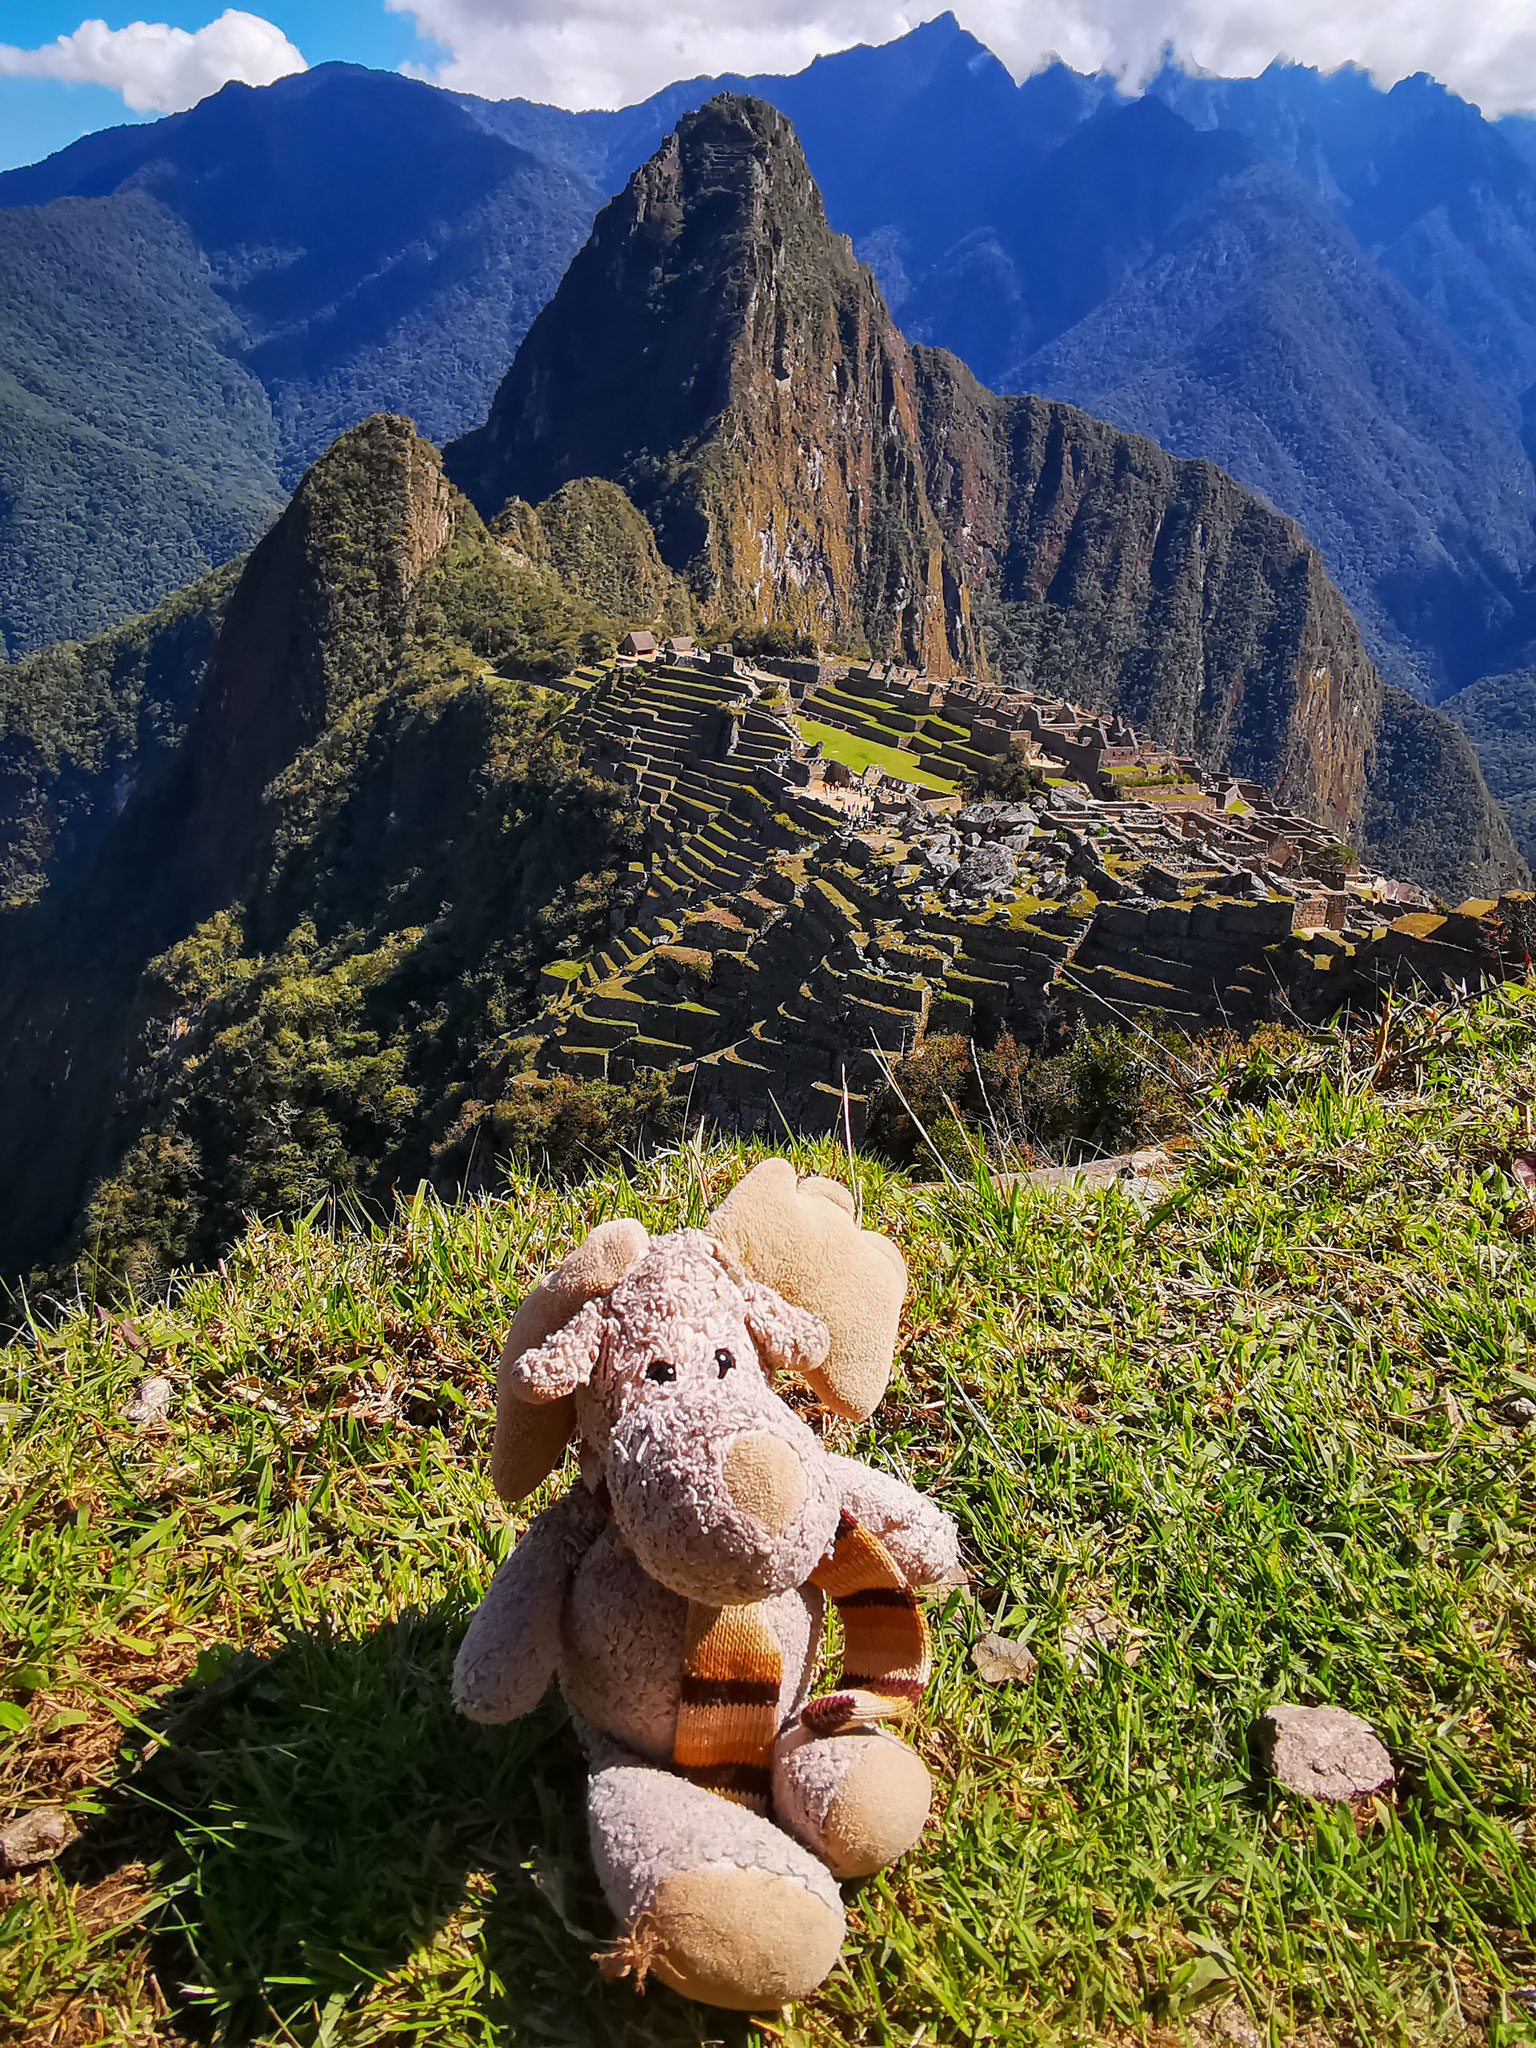 Klassisches Touribild beim Machu Picchu